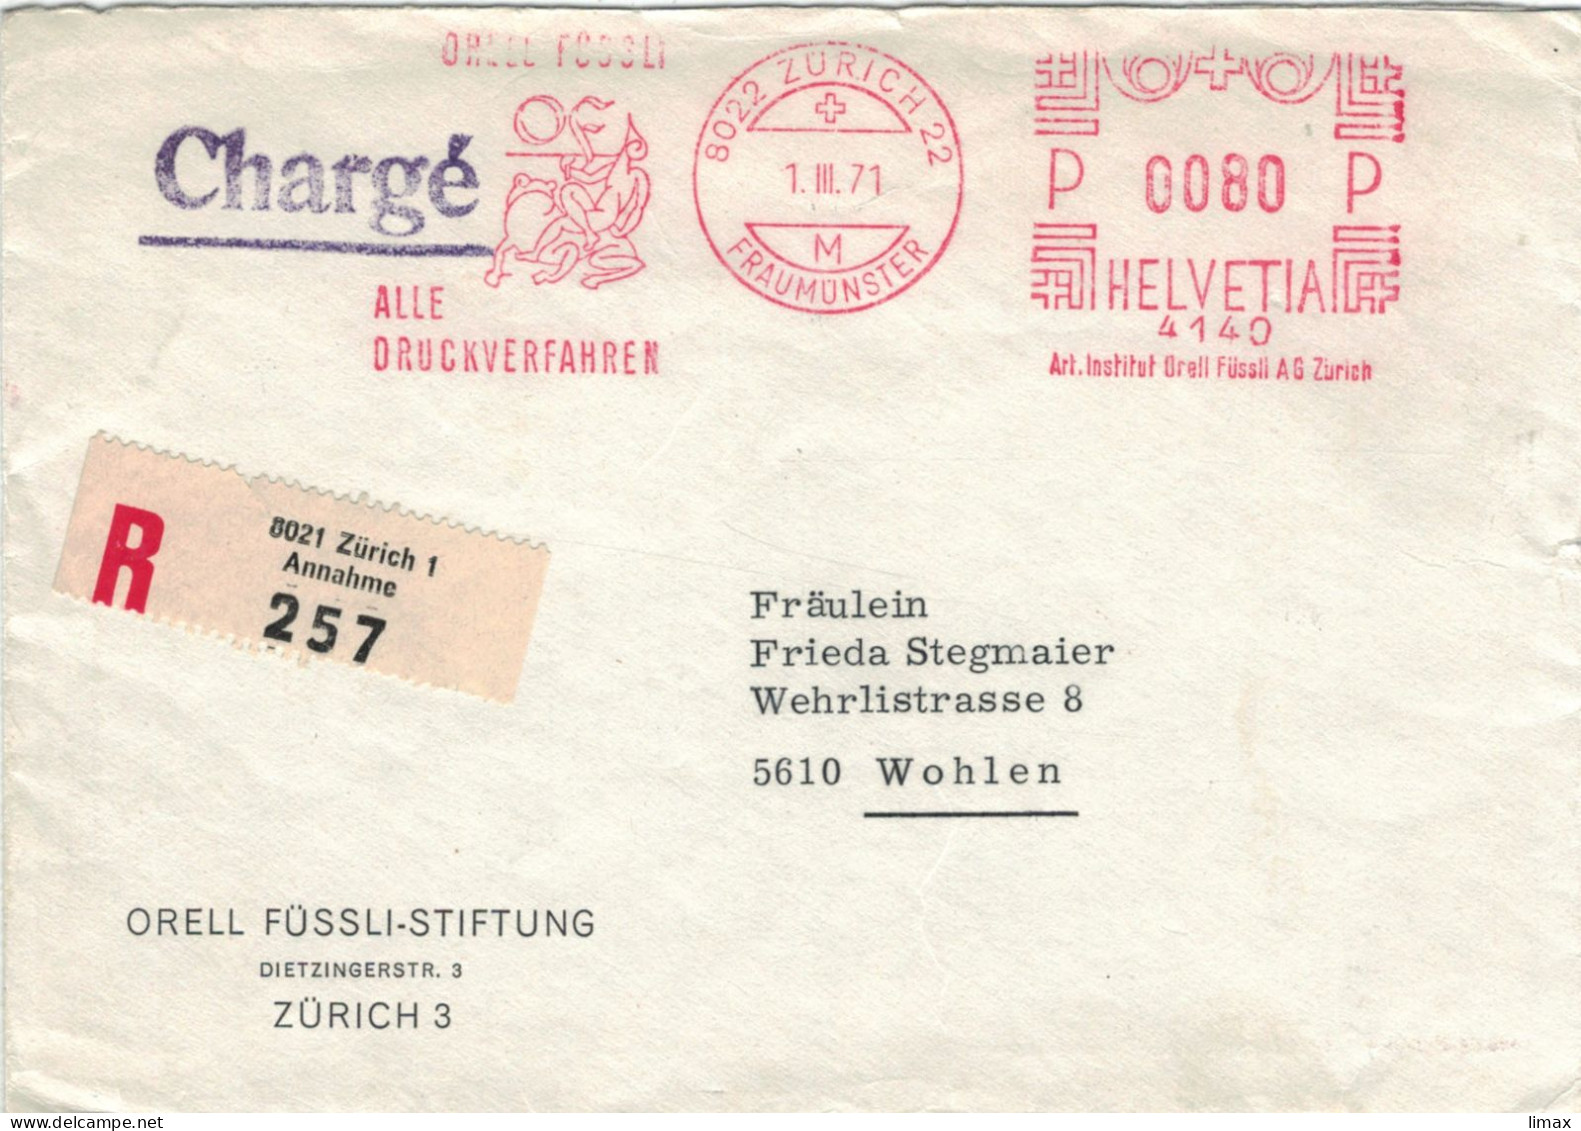 Orell Füssli Alle Druckverfahren 8022 Zürich Fraumünster 1971 No. 4140 - Frosch - Vgl. Froschauersche Druckerei - Frankiermaschinen (FraMA)